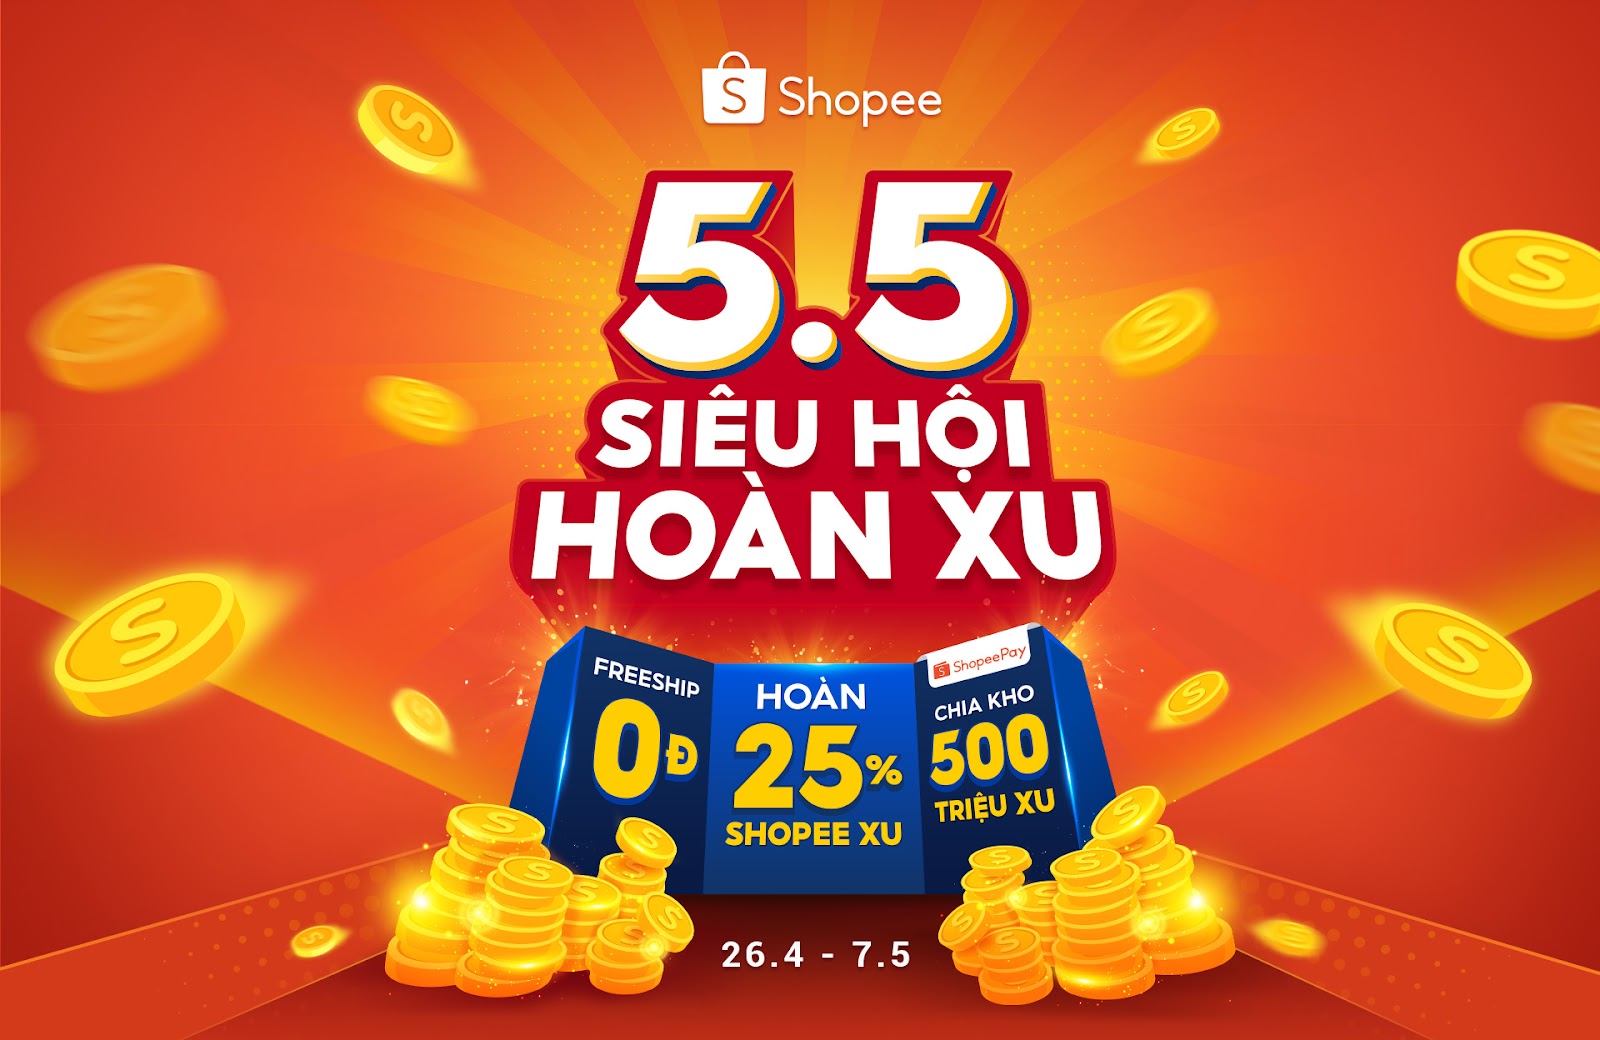 Shopee khởi động 5.5 Siêu Hội Hoàn Xu ưu đãi không kém ngày hội siêu sale nào